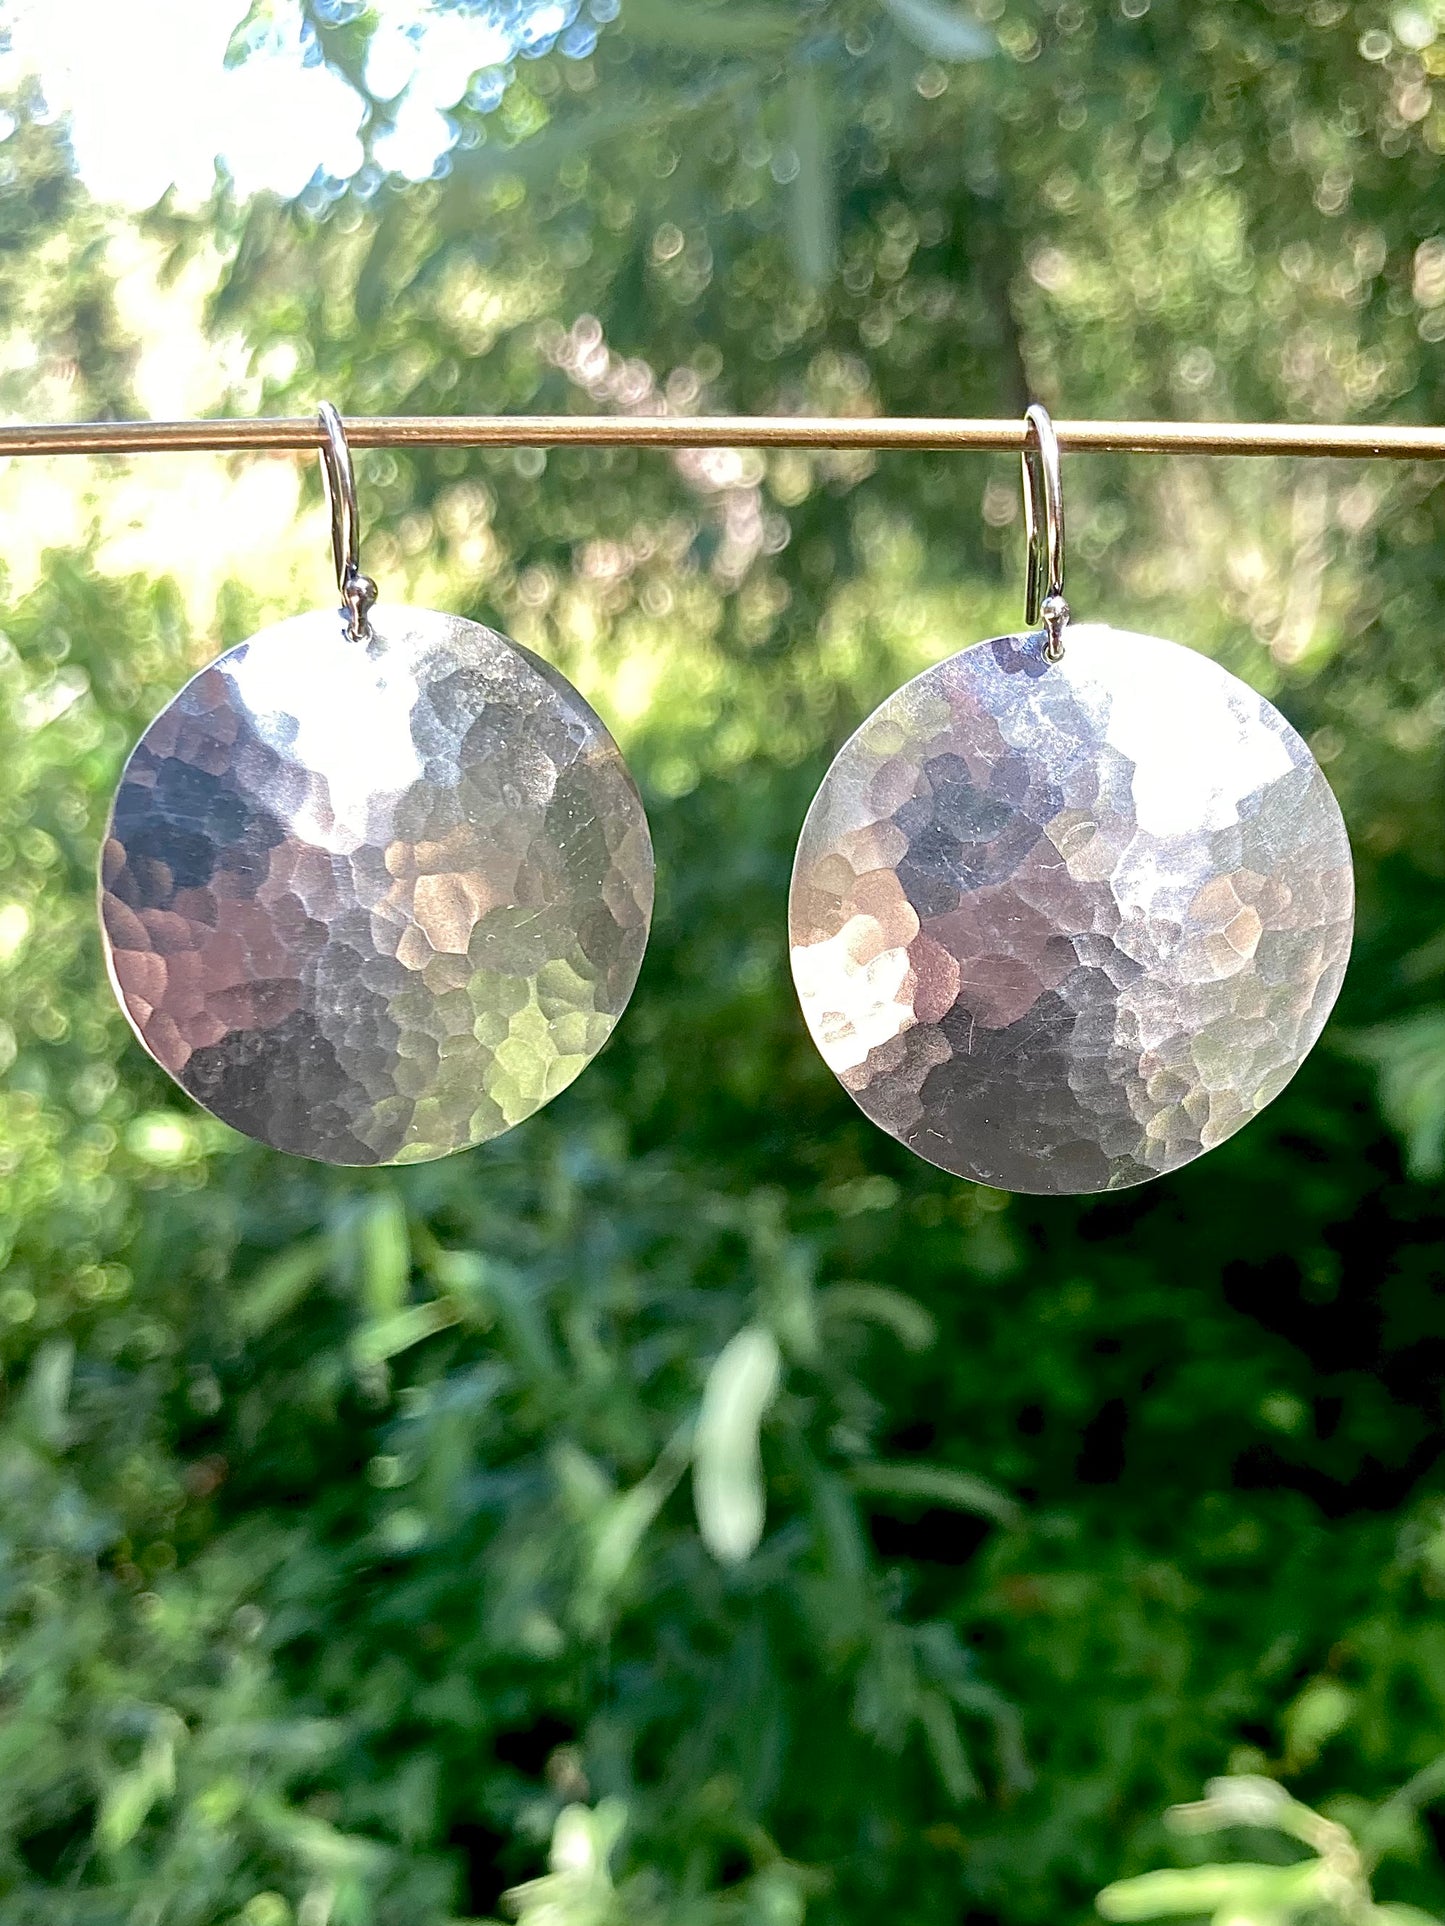 Full Moon Earrings in Sterling Silver | Moon Phase Earrings